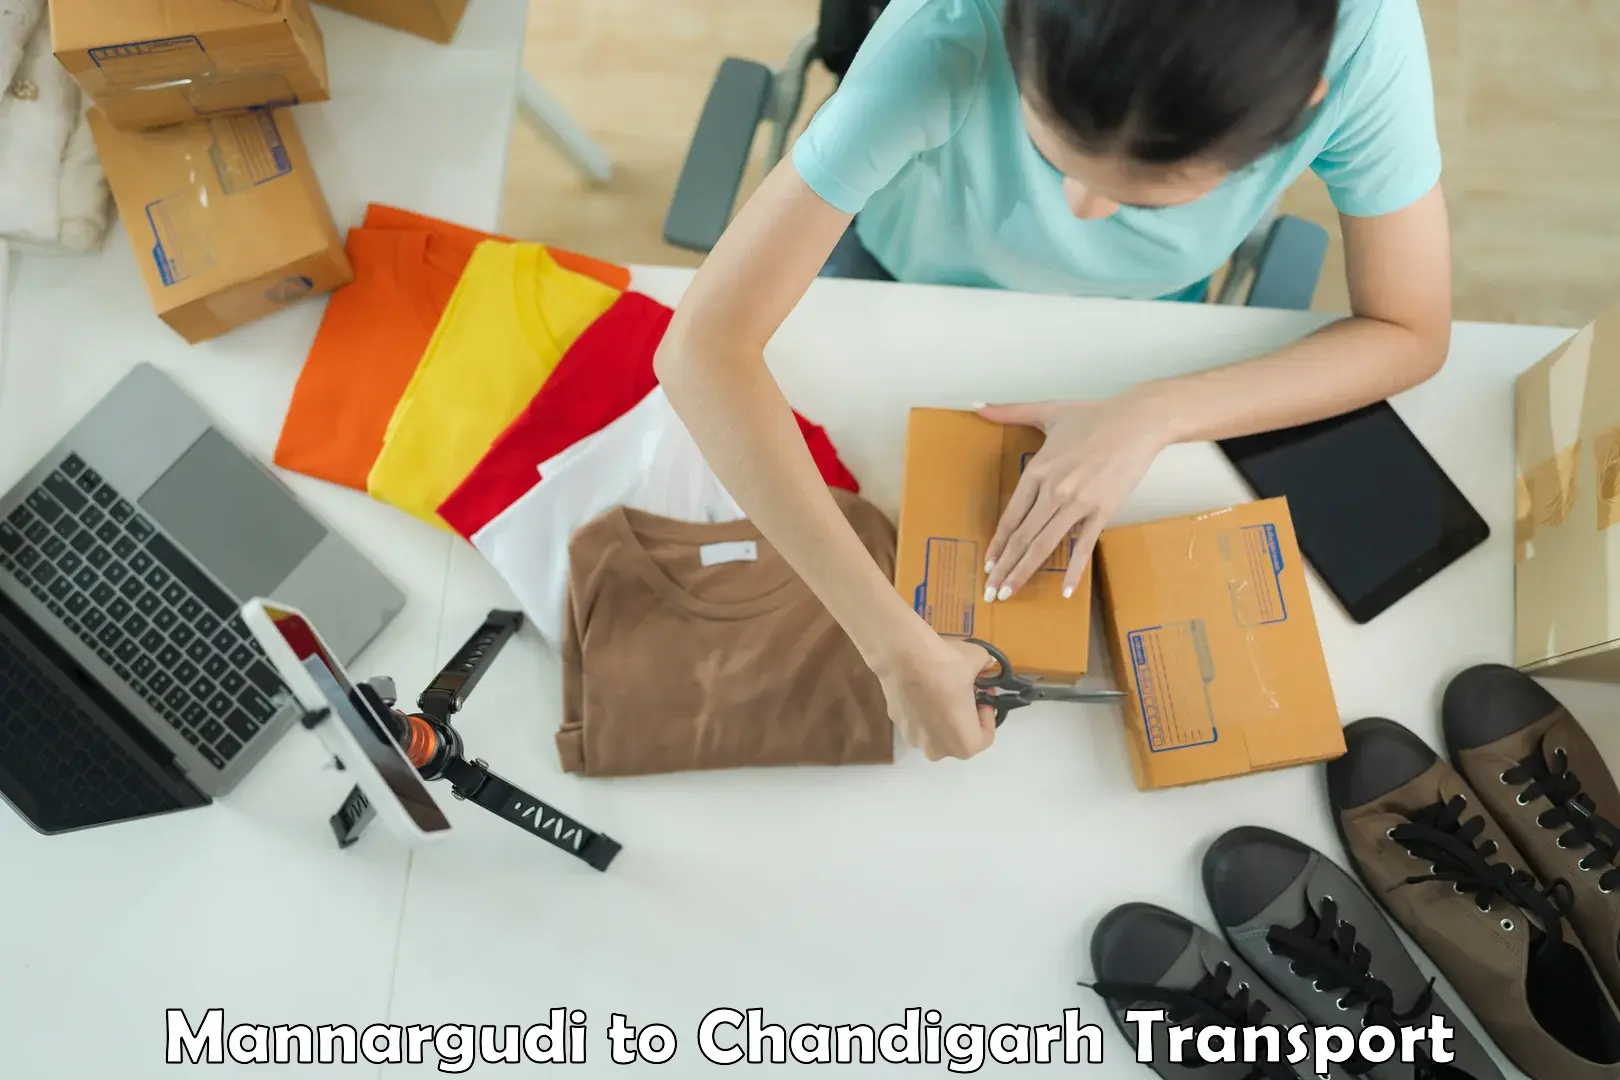 Transport in sharing Mannargudi to Chandigarh